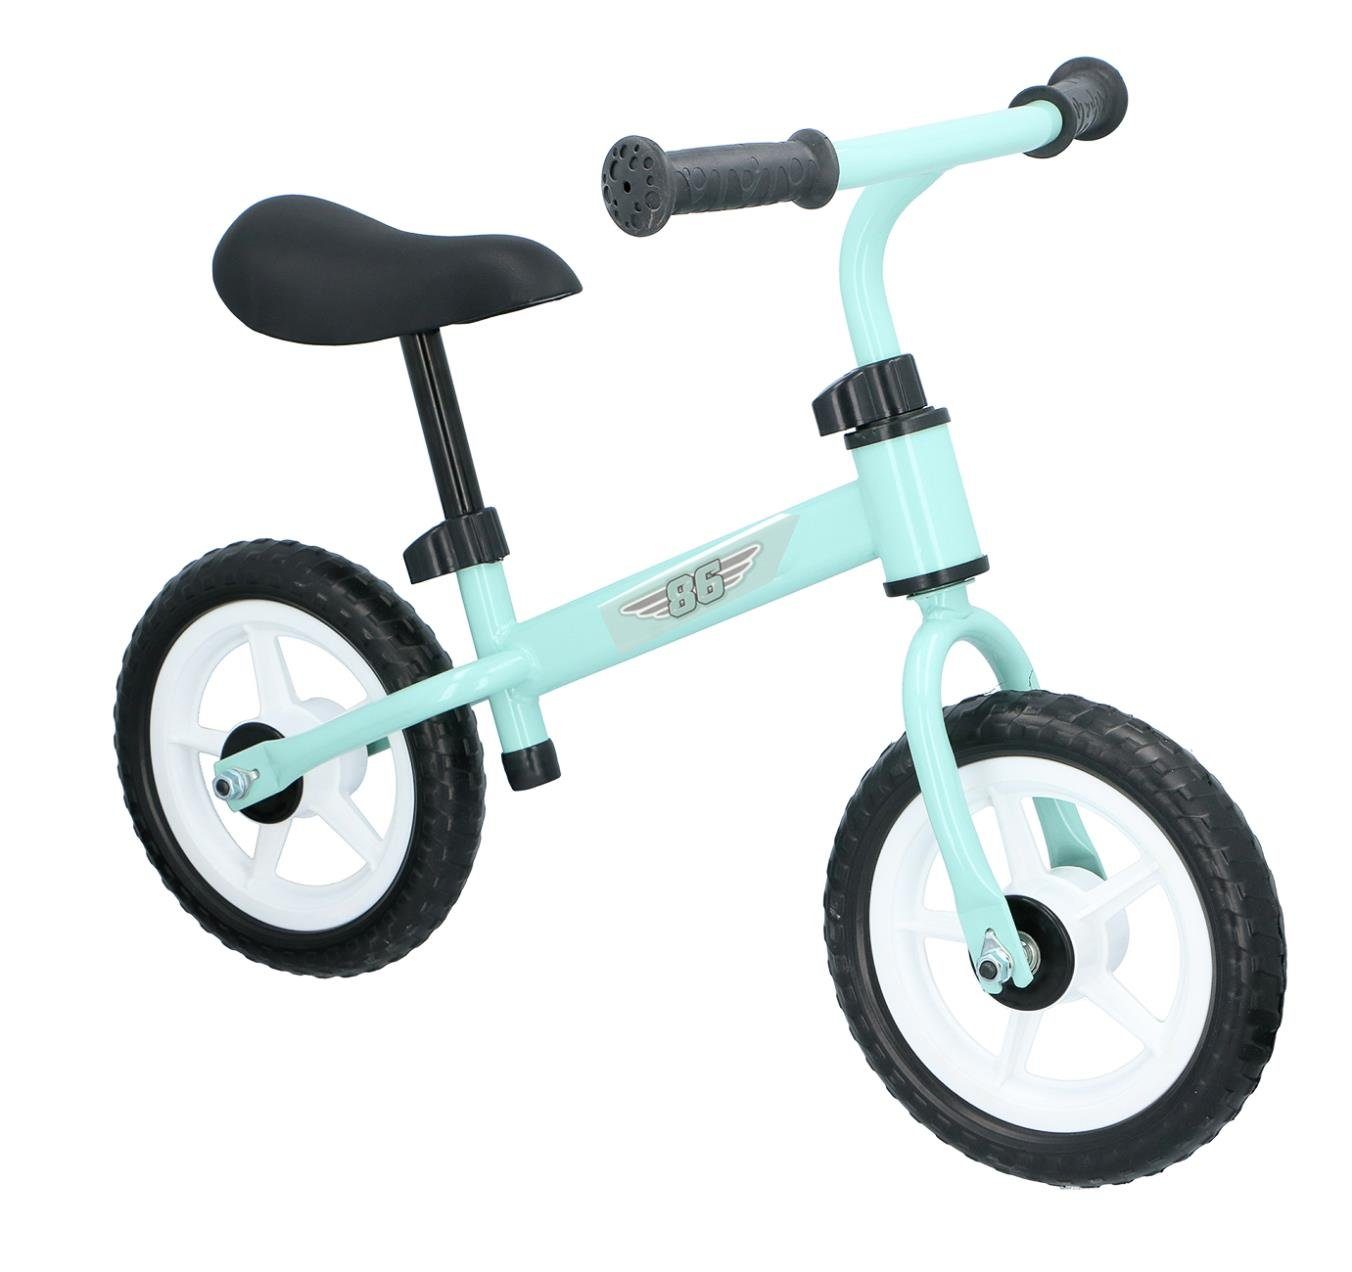 Bubble-Store Laufrad Kinder Laufrad ab 2 Jahre, Leichtmetall Rahmen, Kinder  Lernlaufrad, höhenverstellbarer ergonomischer Sattel, Lenker mit  rutschfesten Handgriffen